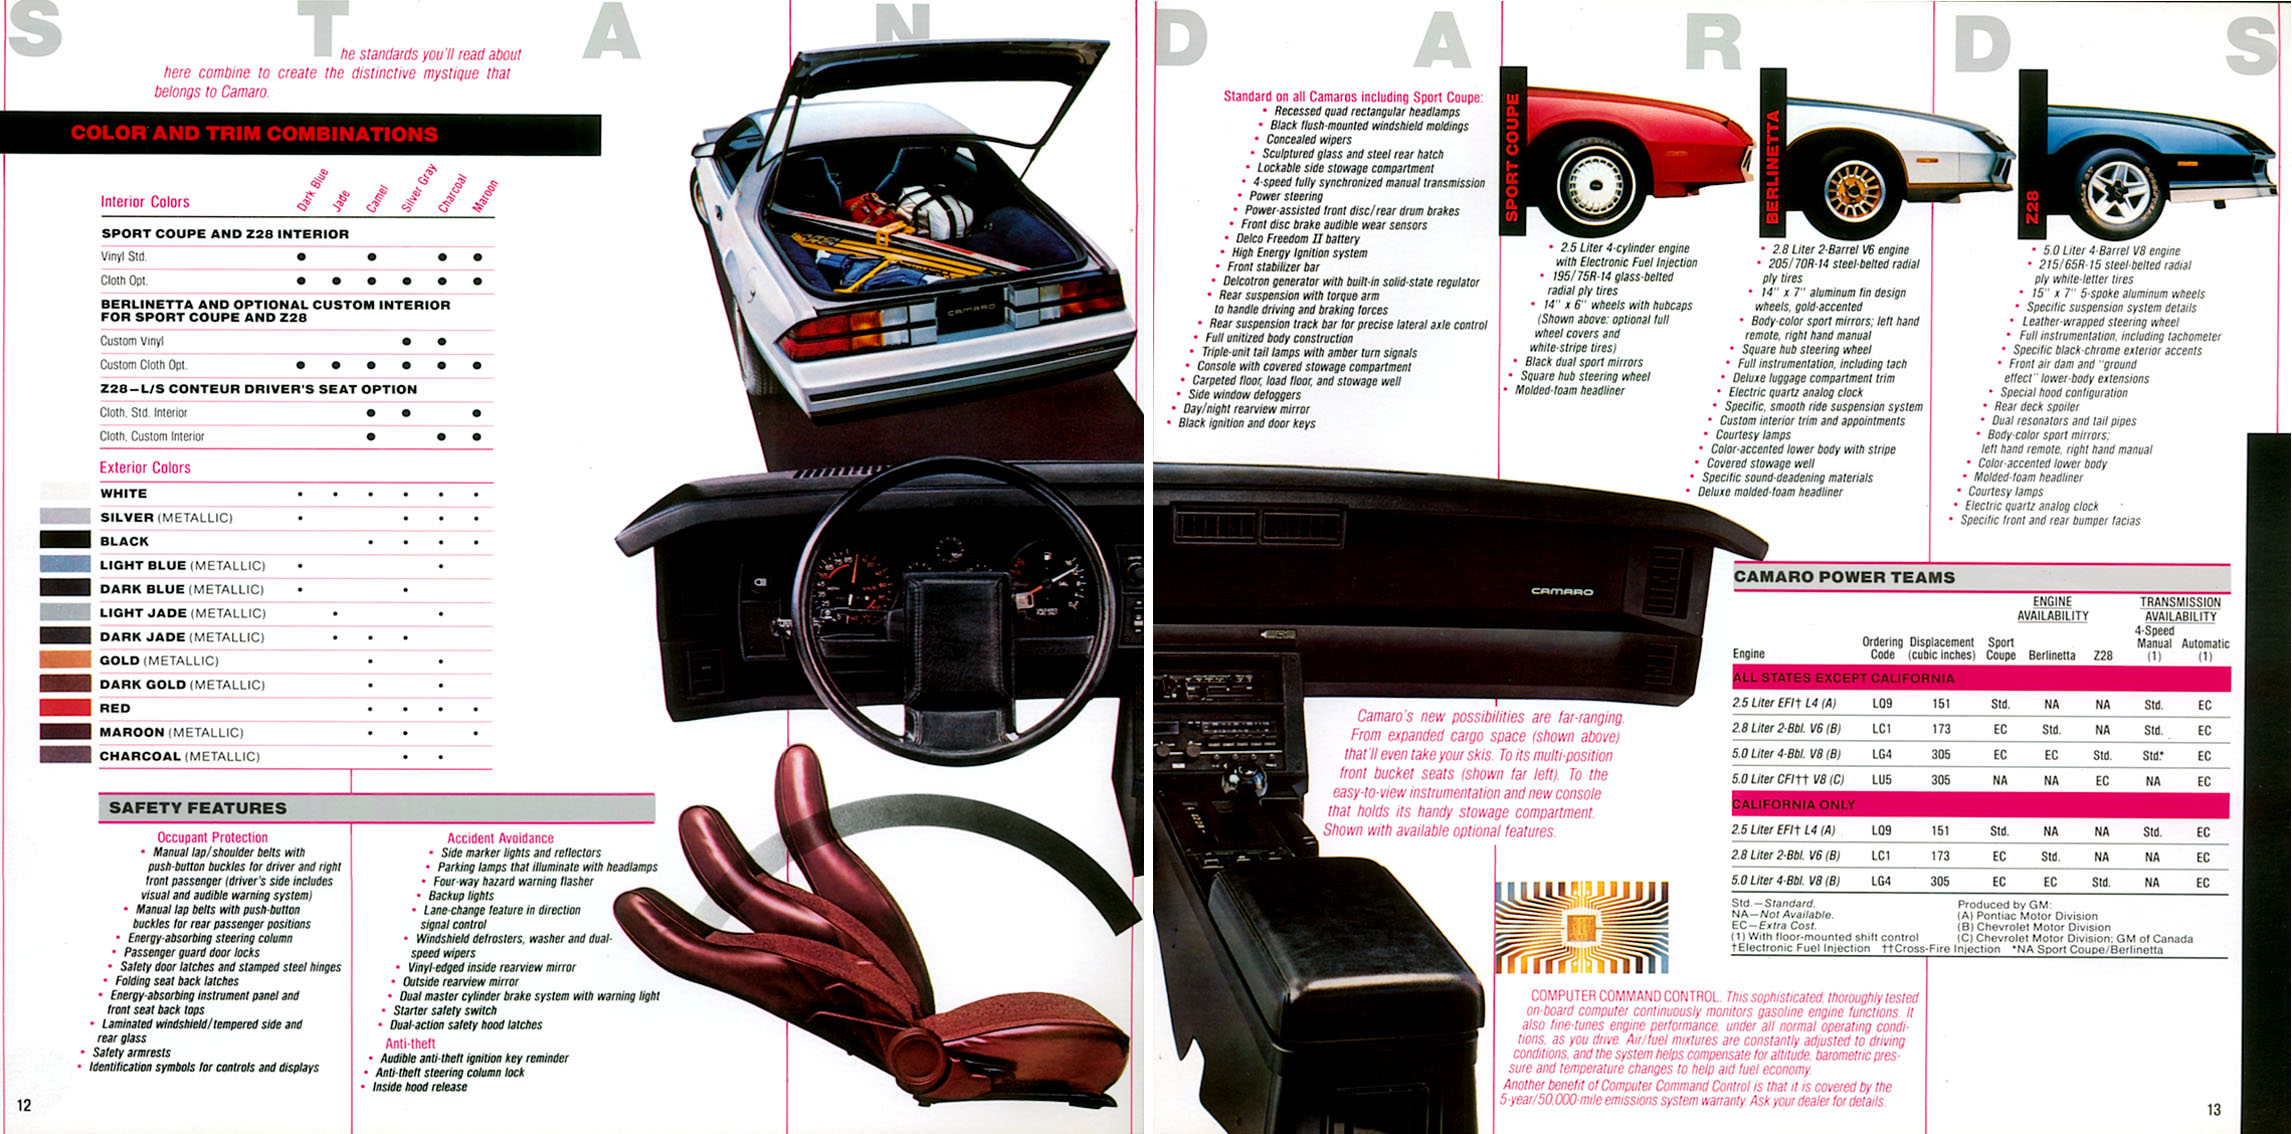 1982 Camaro OEM Brochure (7)